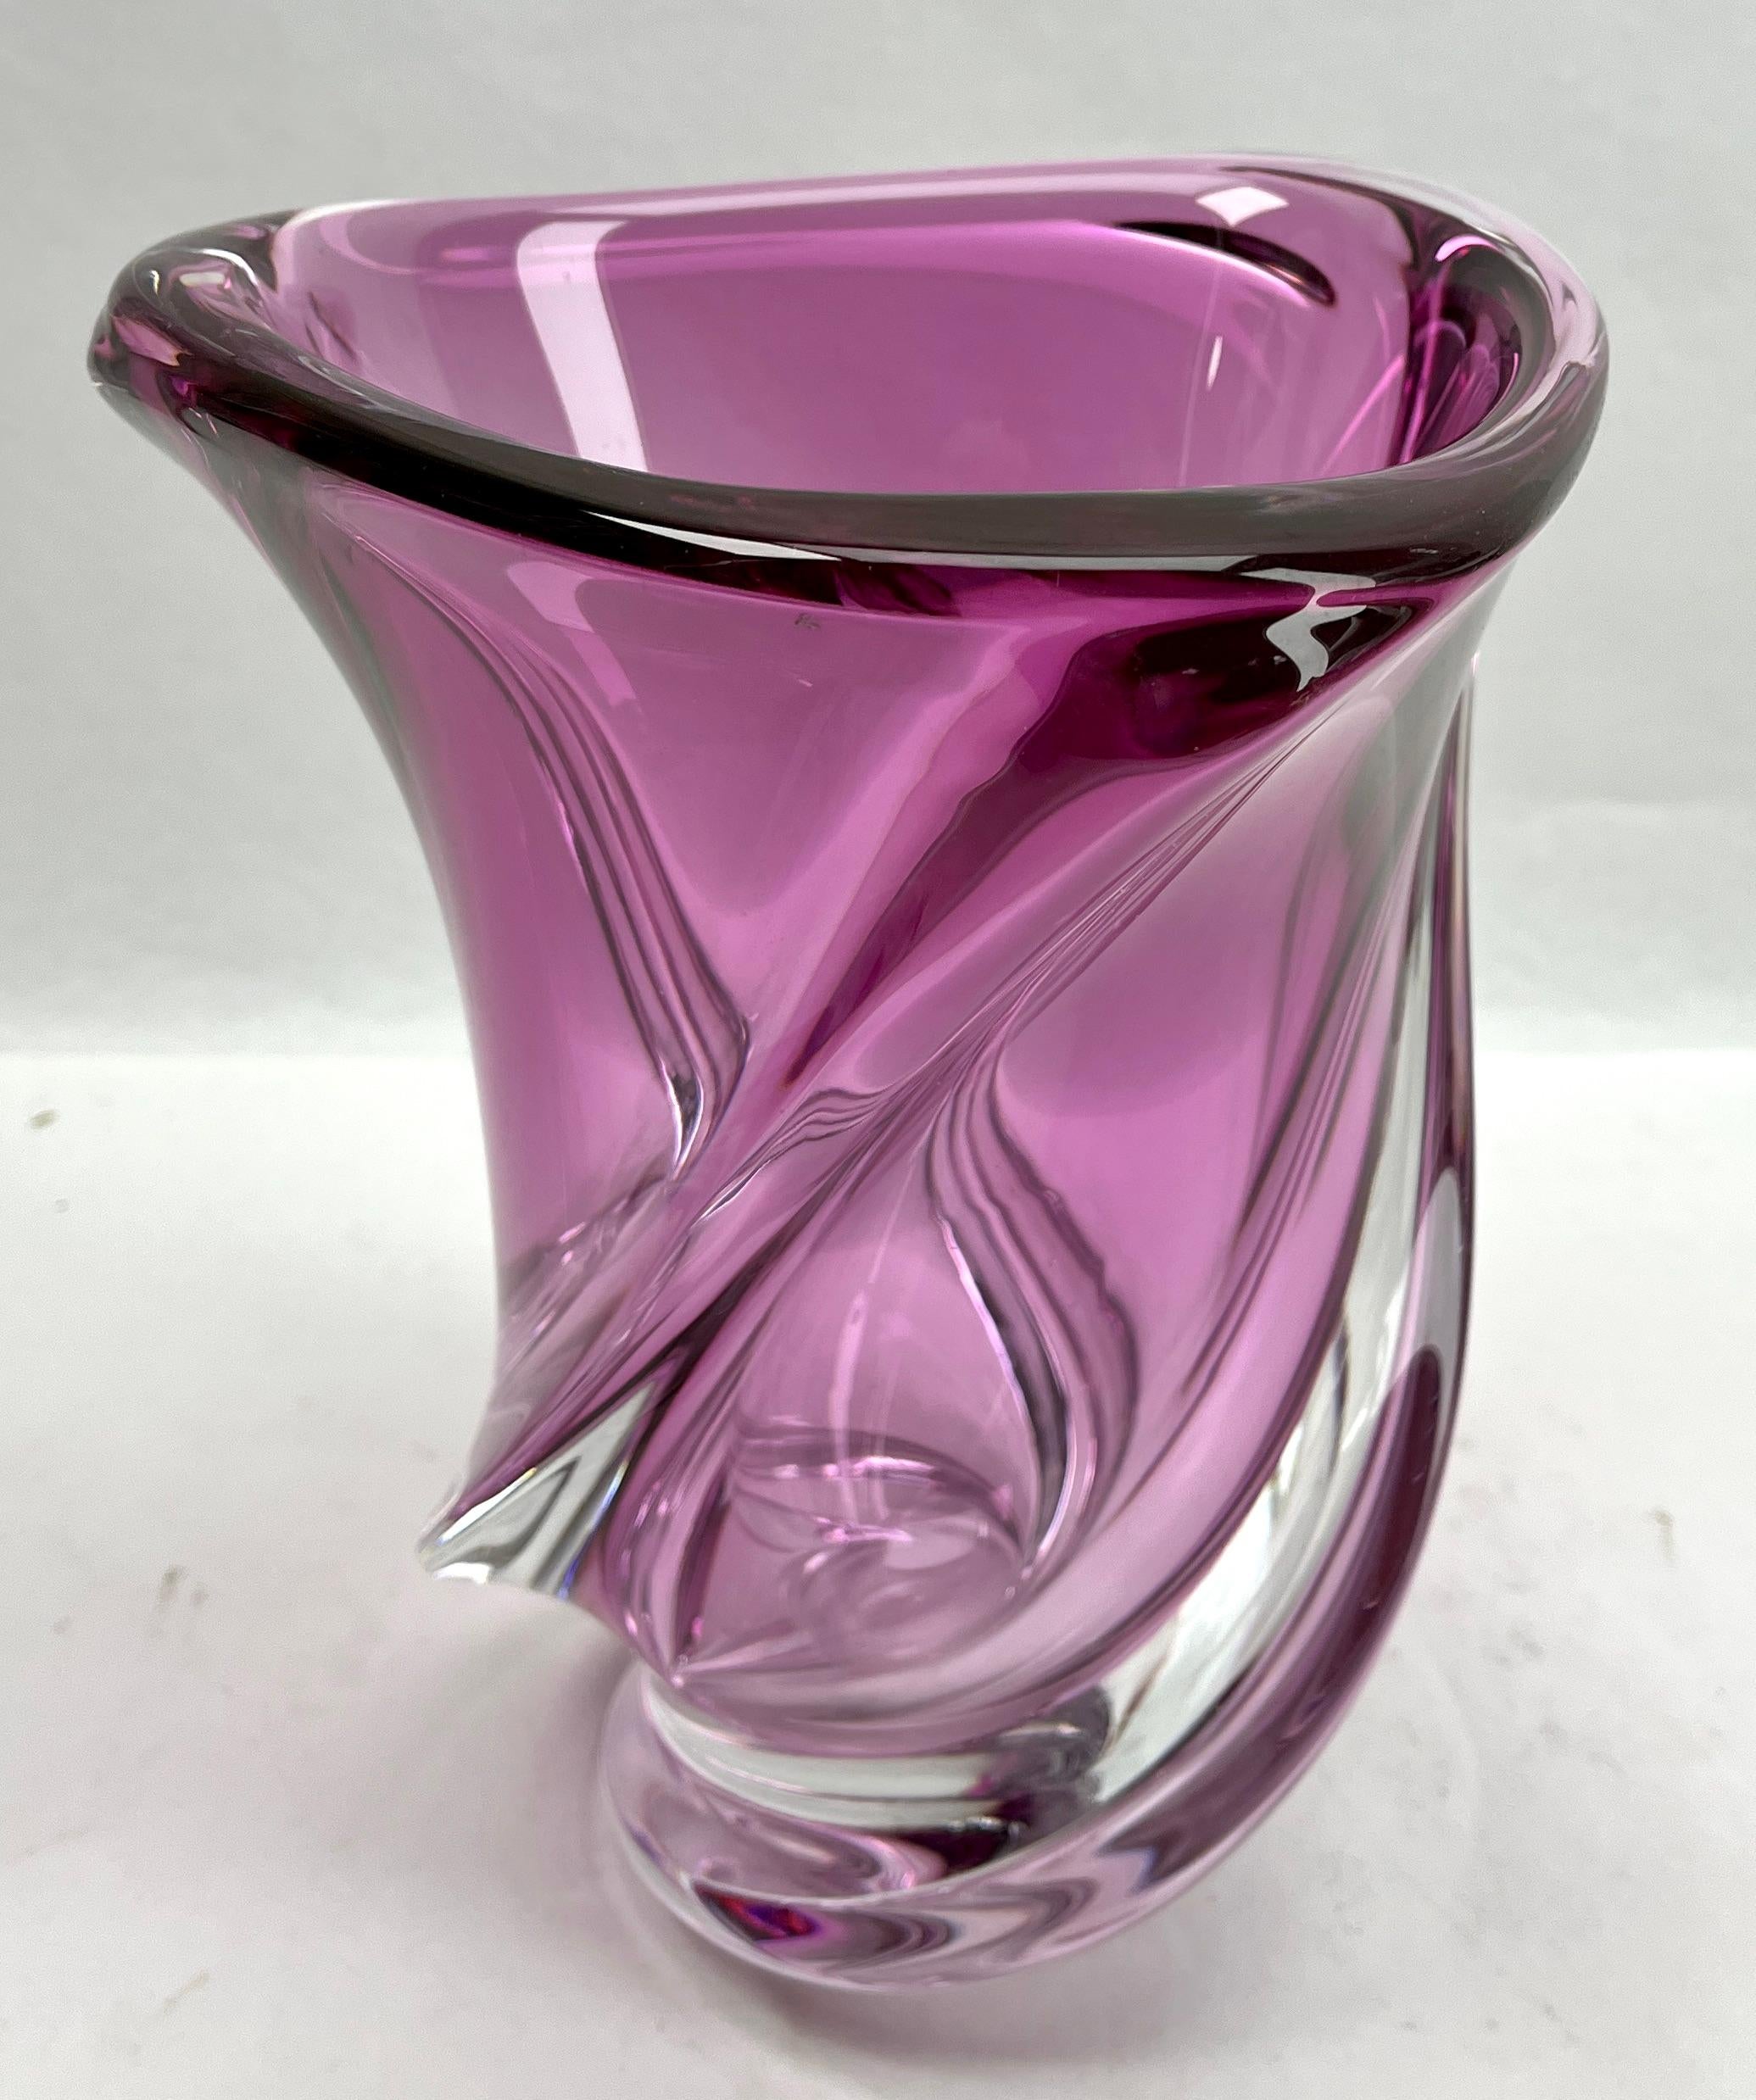 Val Saint Lambert, geschnitzte Kristallvase mit Amethystkern, Belgien.

Schwere Vase aus Val Saint Lambert-Kristall, katalogisiert in den 1950er Jahren.
Die zentrale Amethystfarbe (ein traditioneller Favorit von VSL) wurde mit einer dicken